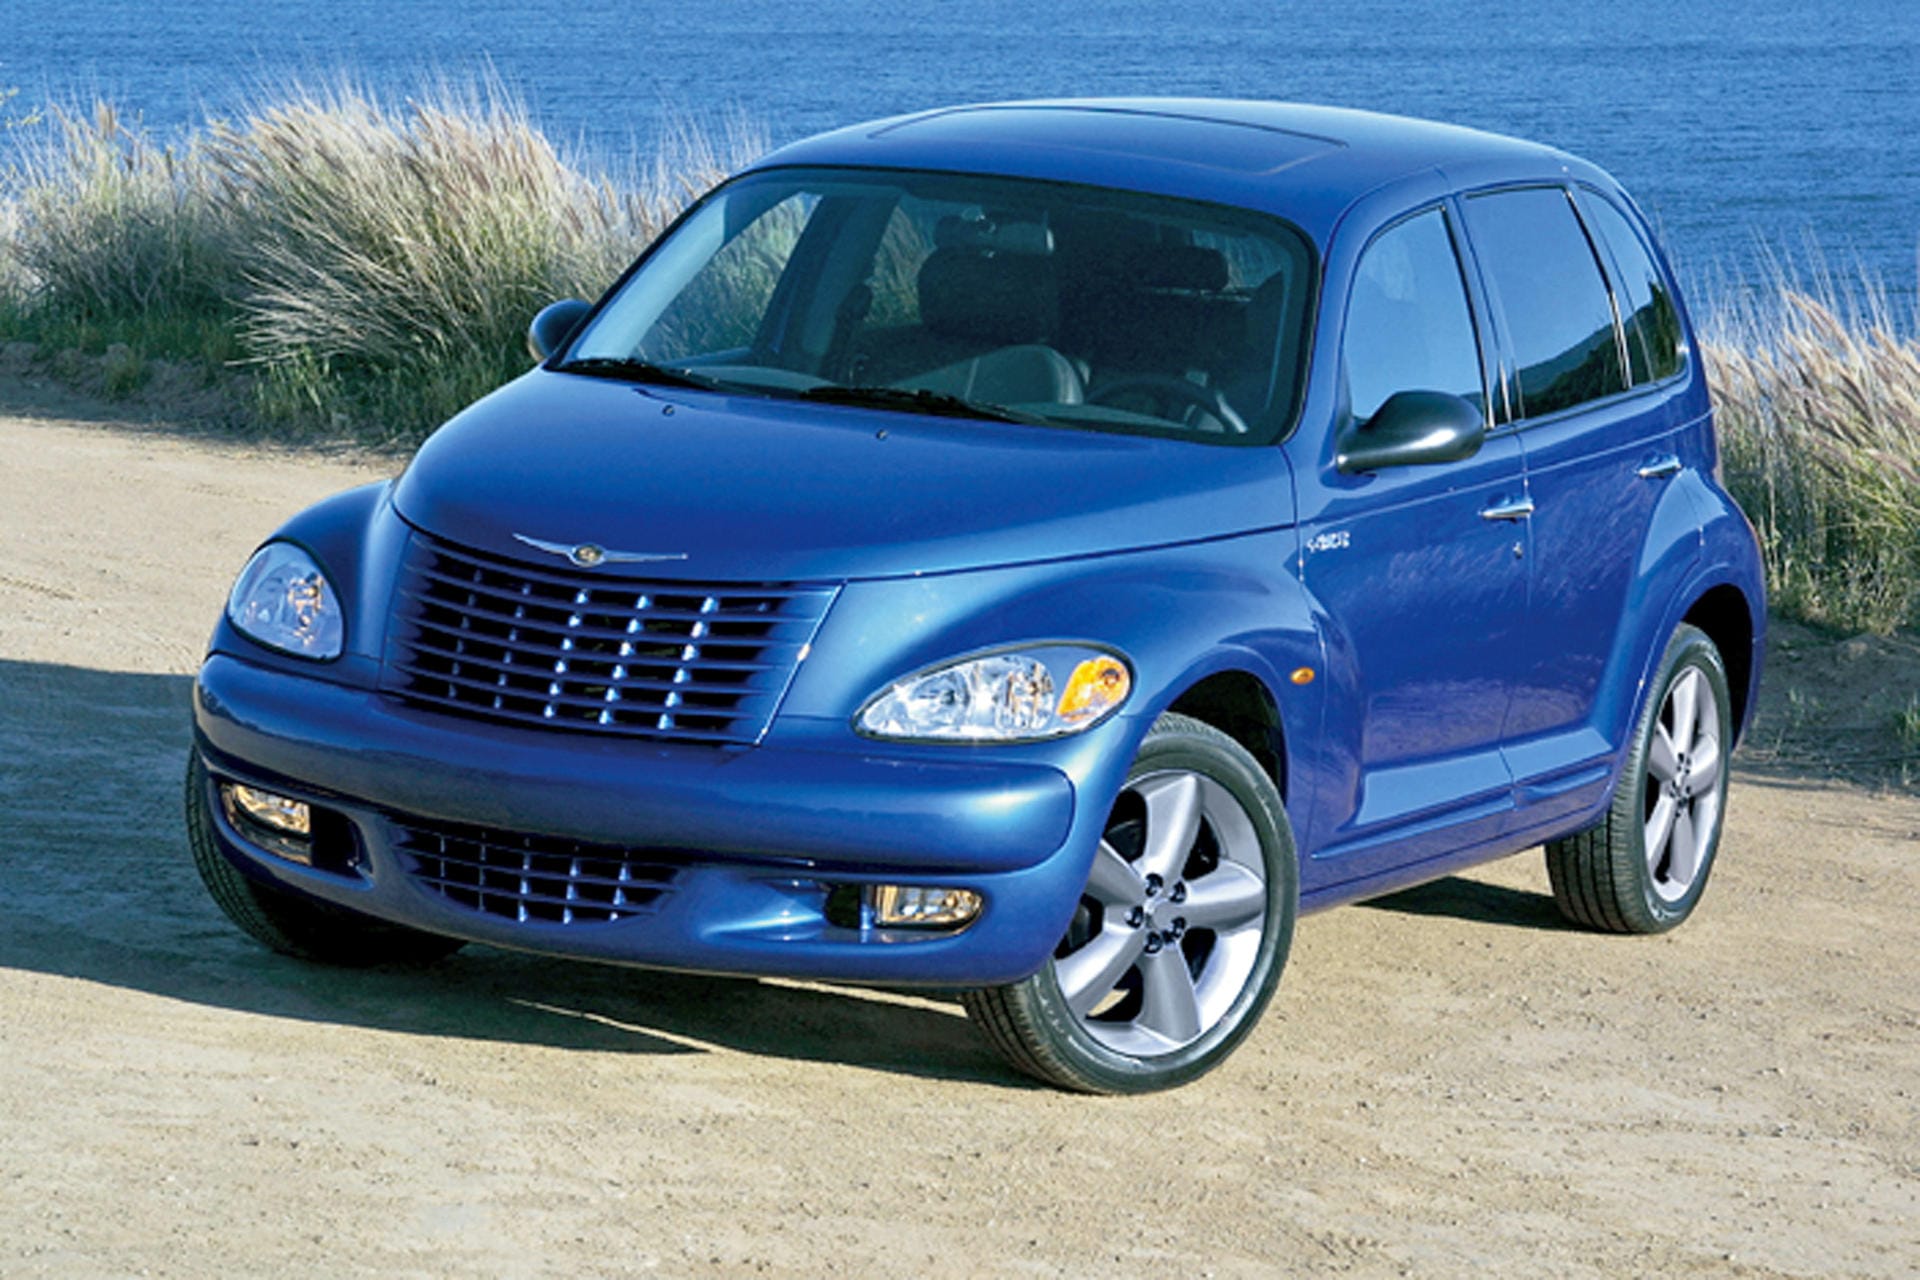 Der Chrysler PT Cruiser hat einen Namen, der bei Engländern für Gelächter sorgen kann. Denn P und T bilden schnell das Wort "pitty". Und das bedeutet "Mitleid".